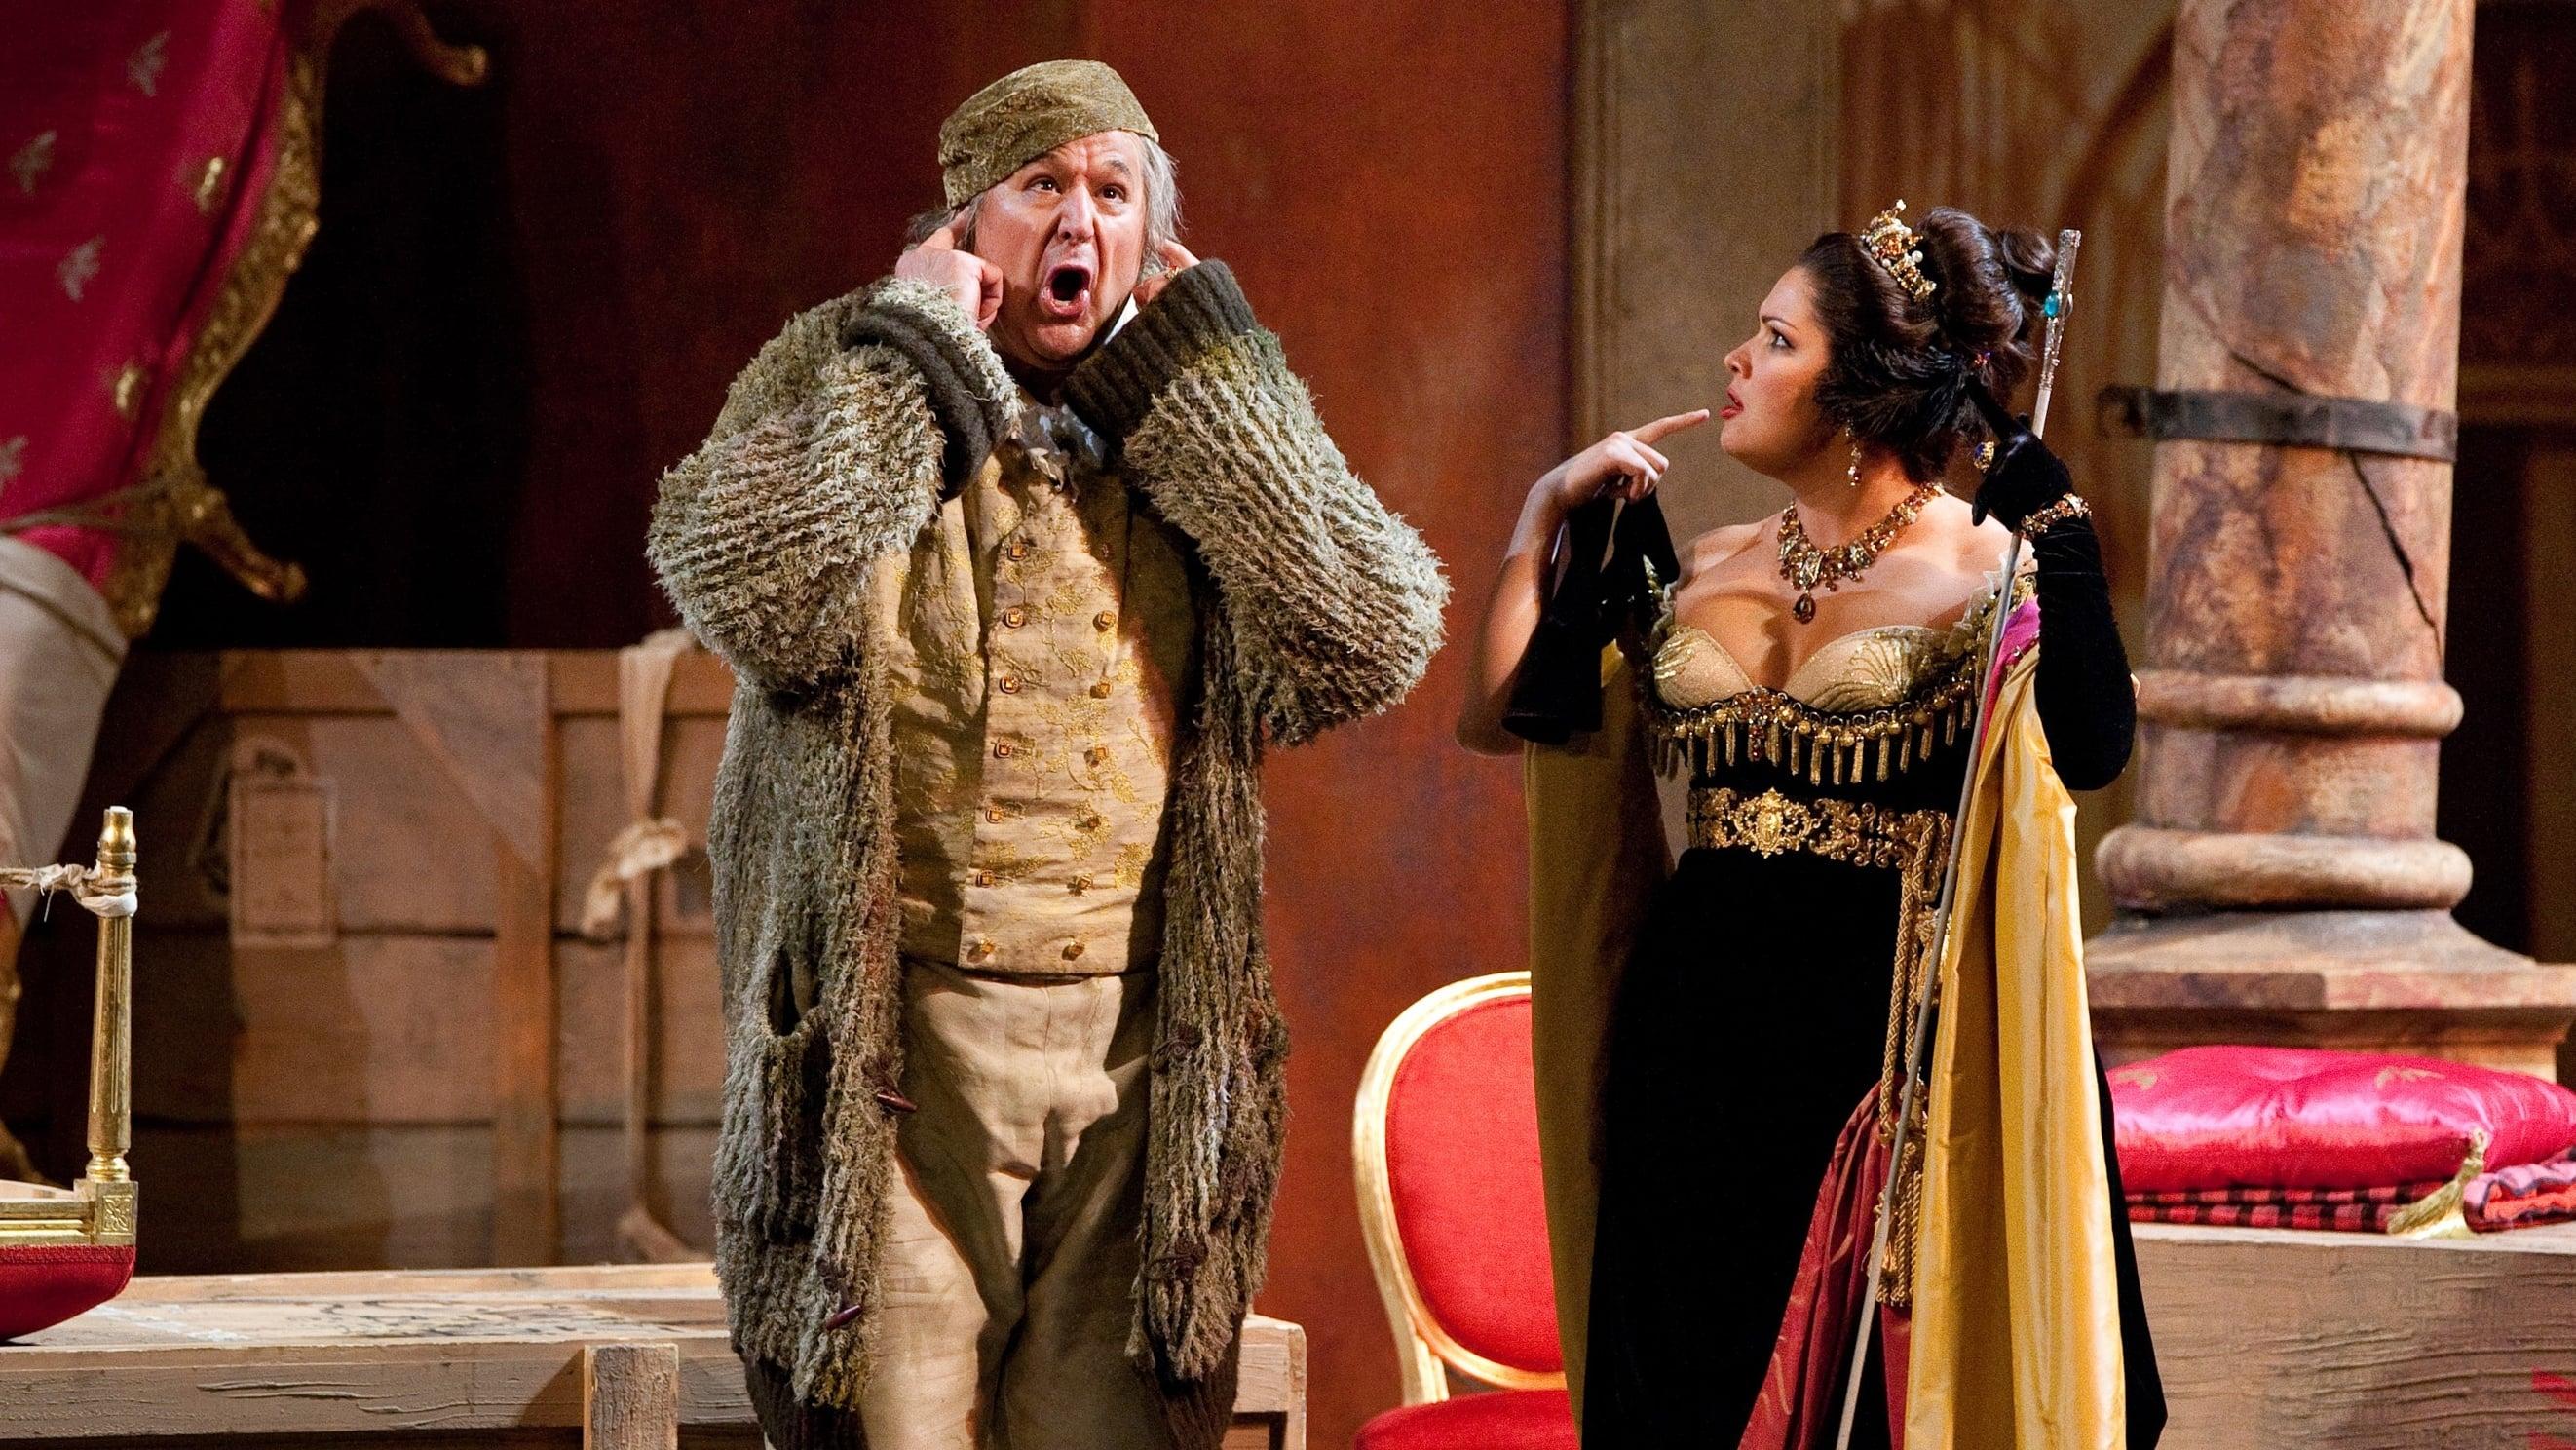 The Metropolitan Opera: Don Pasquale backdrop